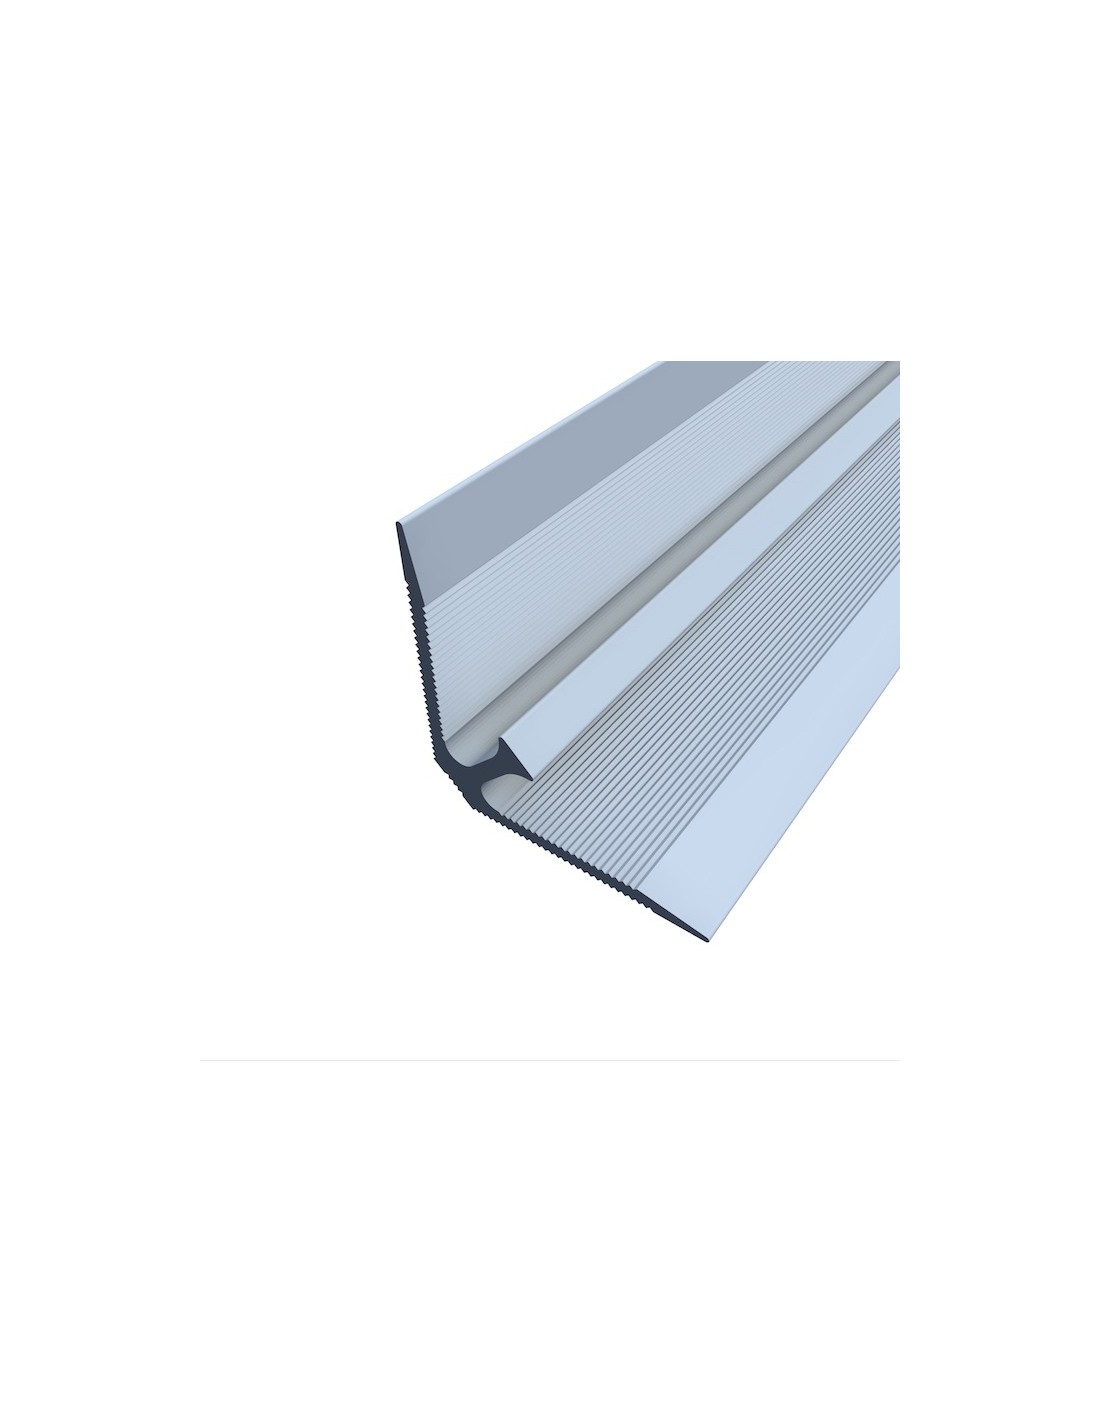 PERFIL R 343 Cantoneira de alumínio para pavimentos de 5 mm​ DIM: 3000 x 5,5 x 5,5 mm